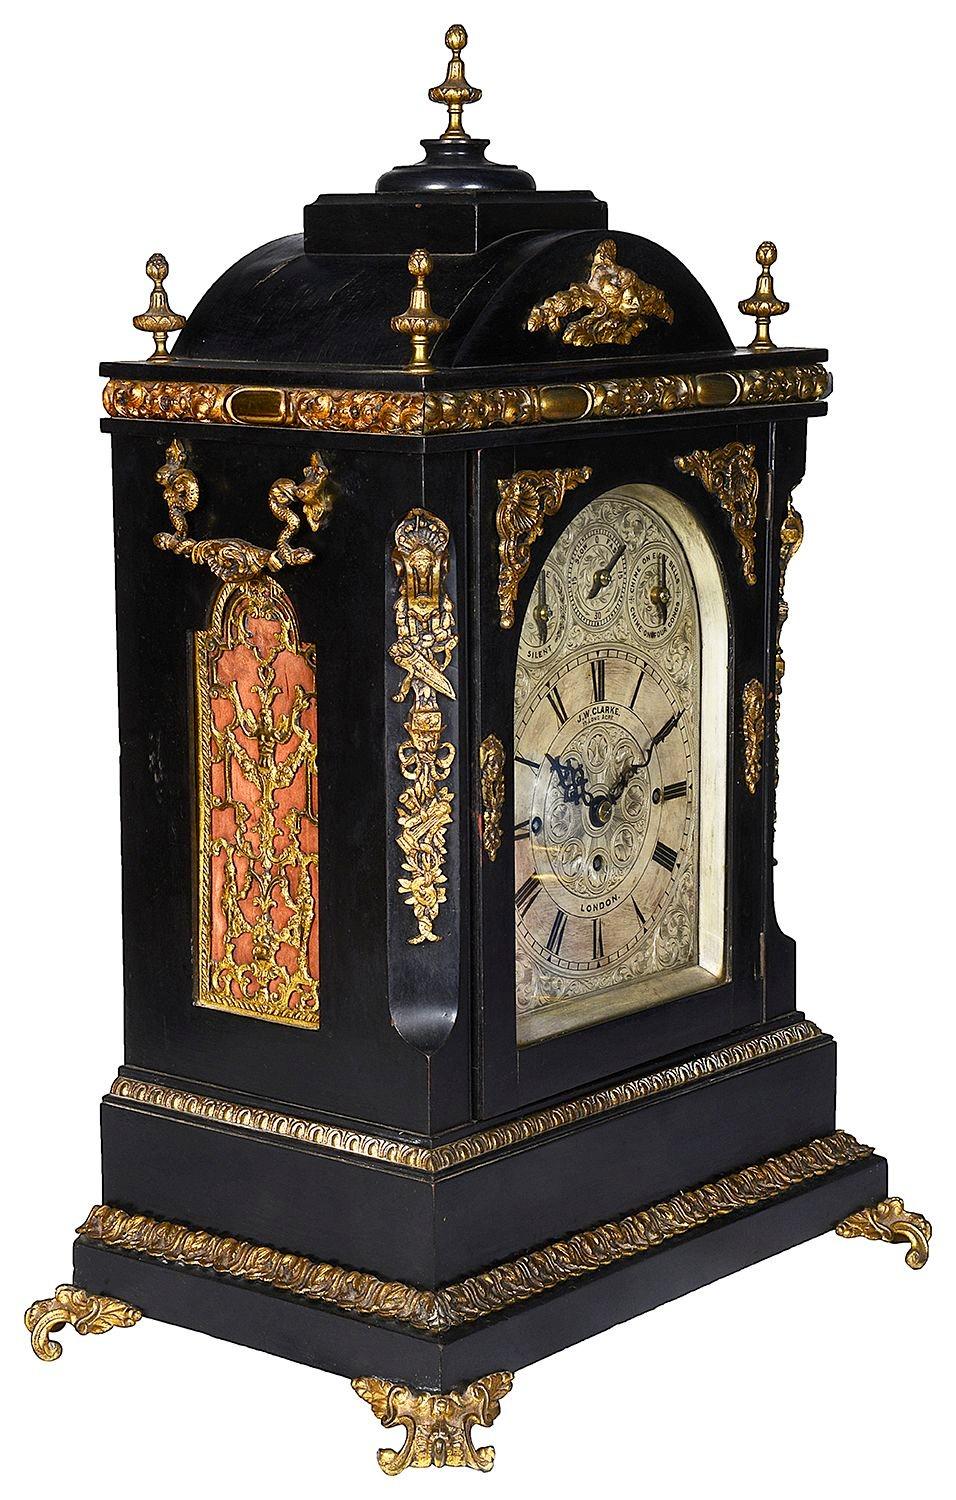 Pendule de cheminée à cadran argenté victorien ébonisé, de très bonne qualité, datant de la fin du 19e siècle, avec un carillon de Westminster sur 8 cloches ou un gong. Cadran silencieux, mouvement d'une durée de huit jours, sonnerie tous les quarts